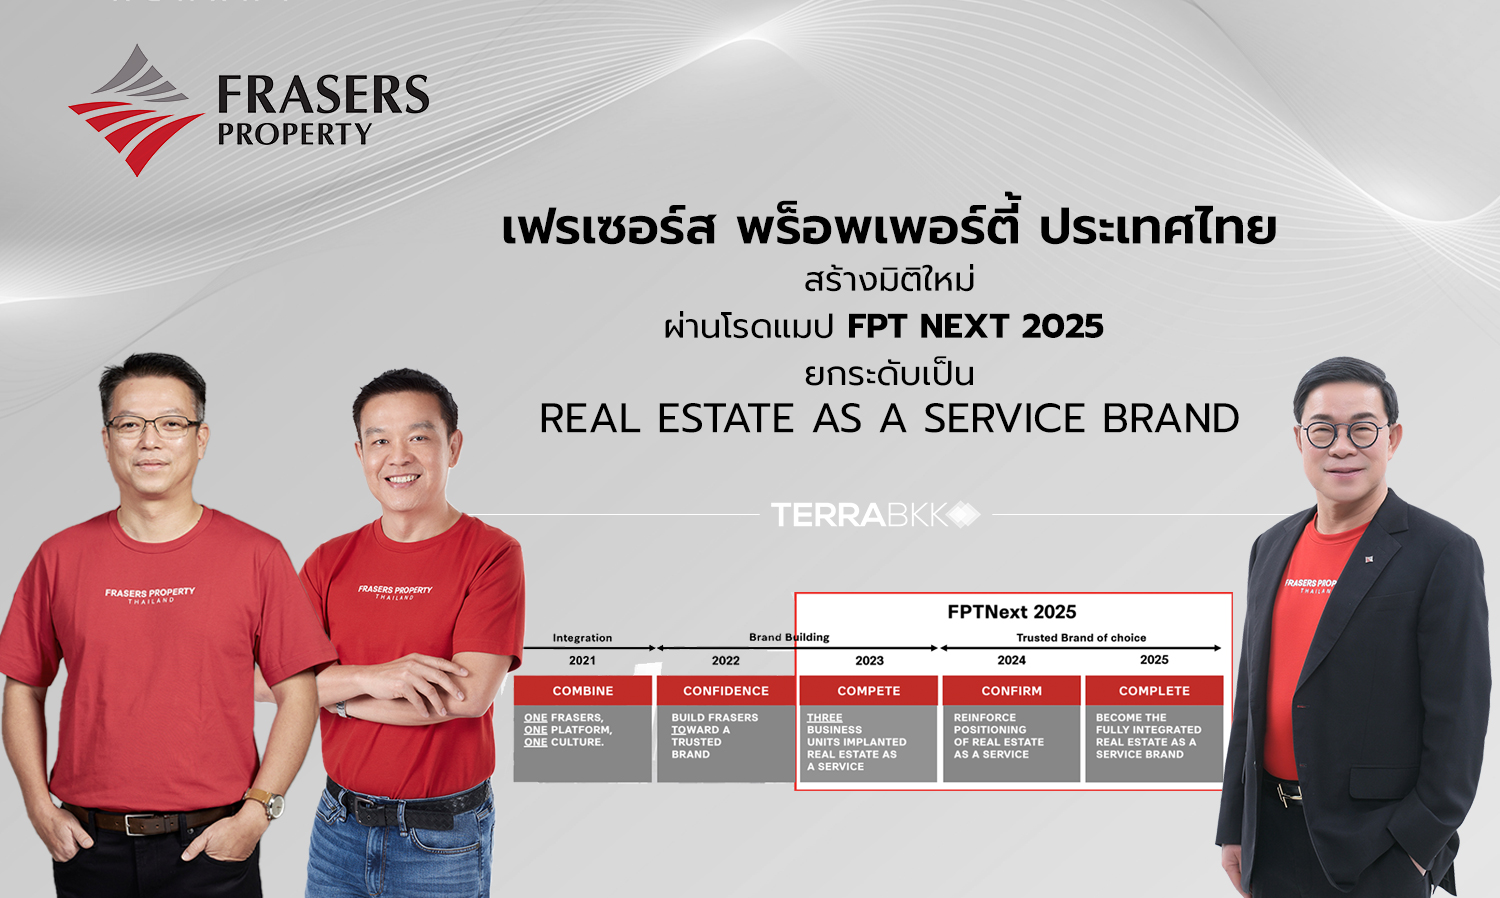 เฟรเซอร์ส พร็อพเพอร์ตี้ ประเทศไทย สร้างมิติใหม่ผ่านโรดแมป FPT Next 2025 ยกระดับเป็น Real Estate as a Service Brand